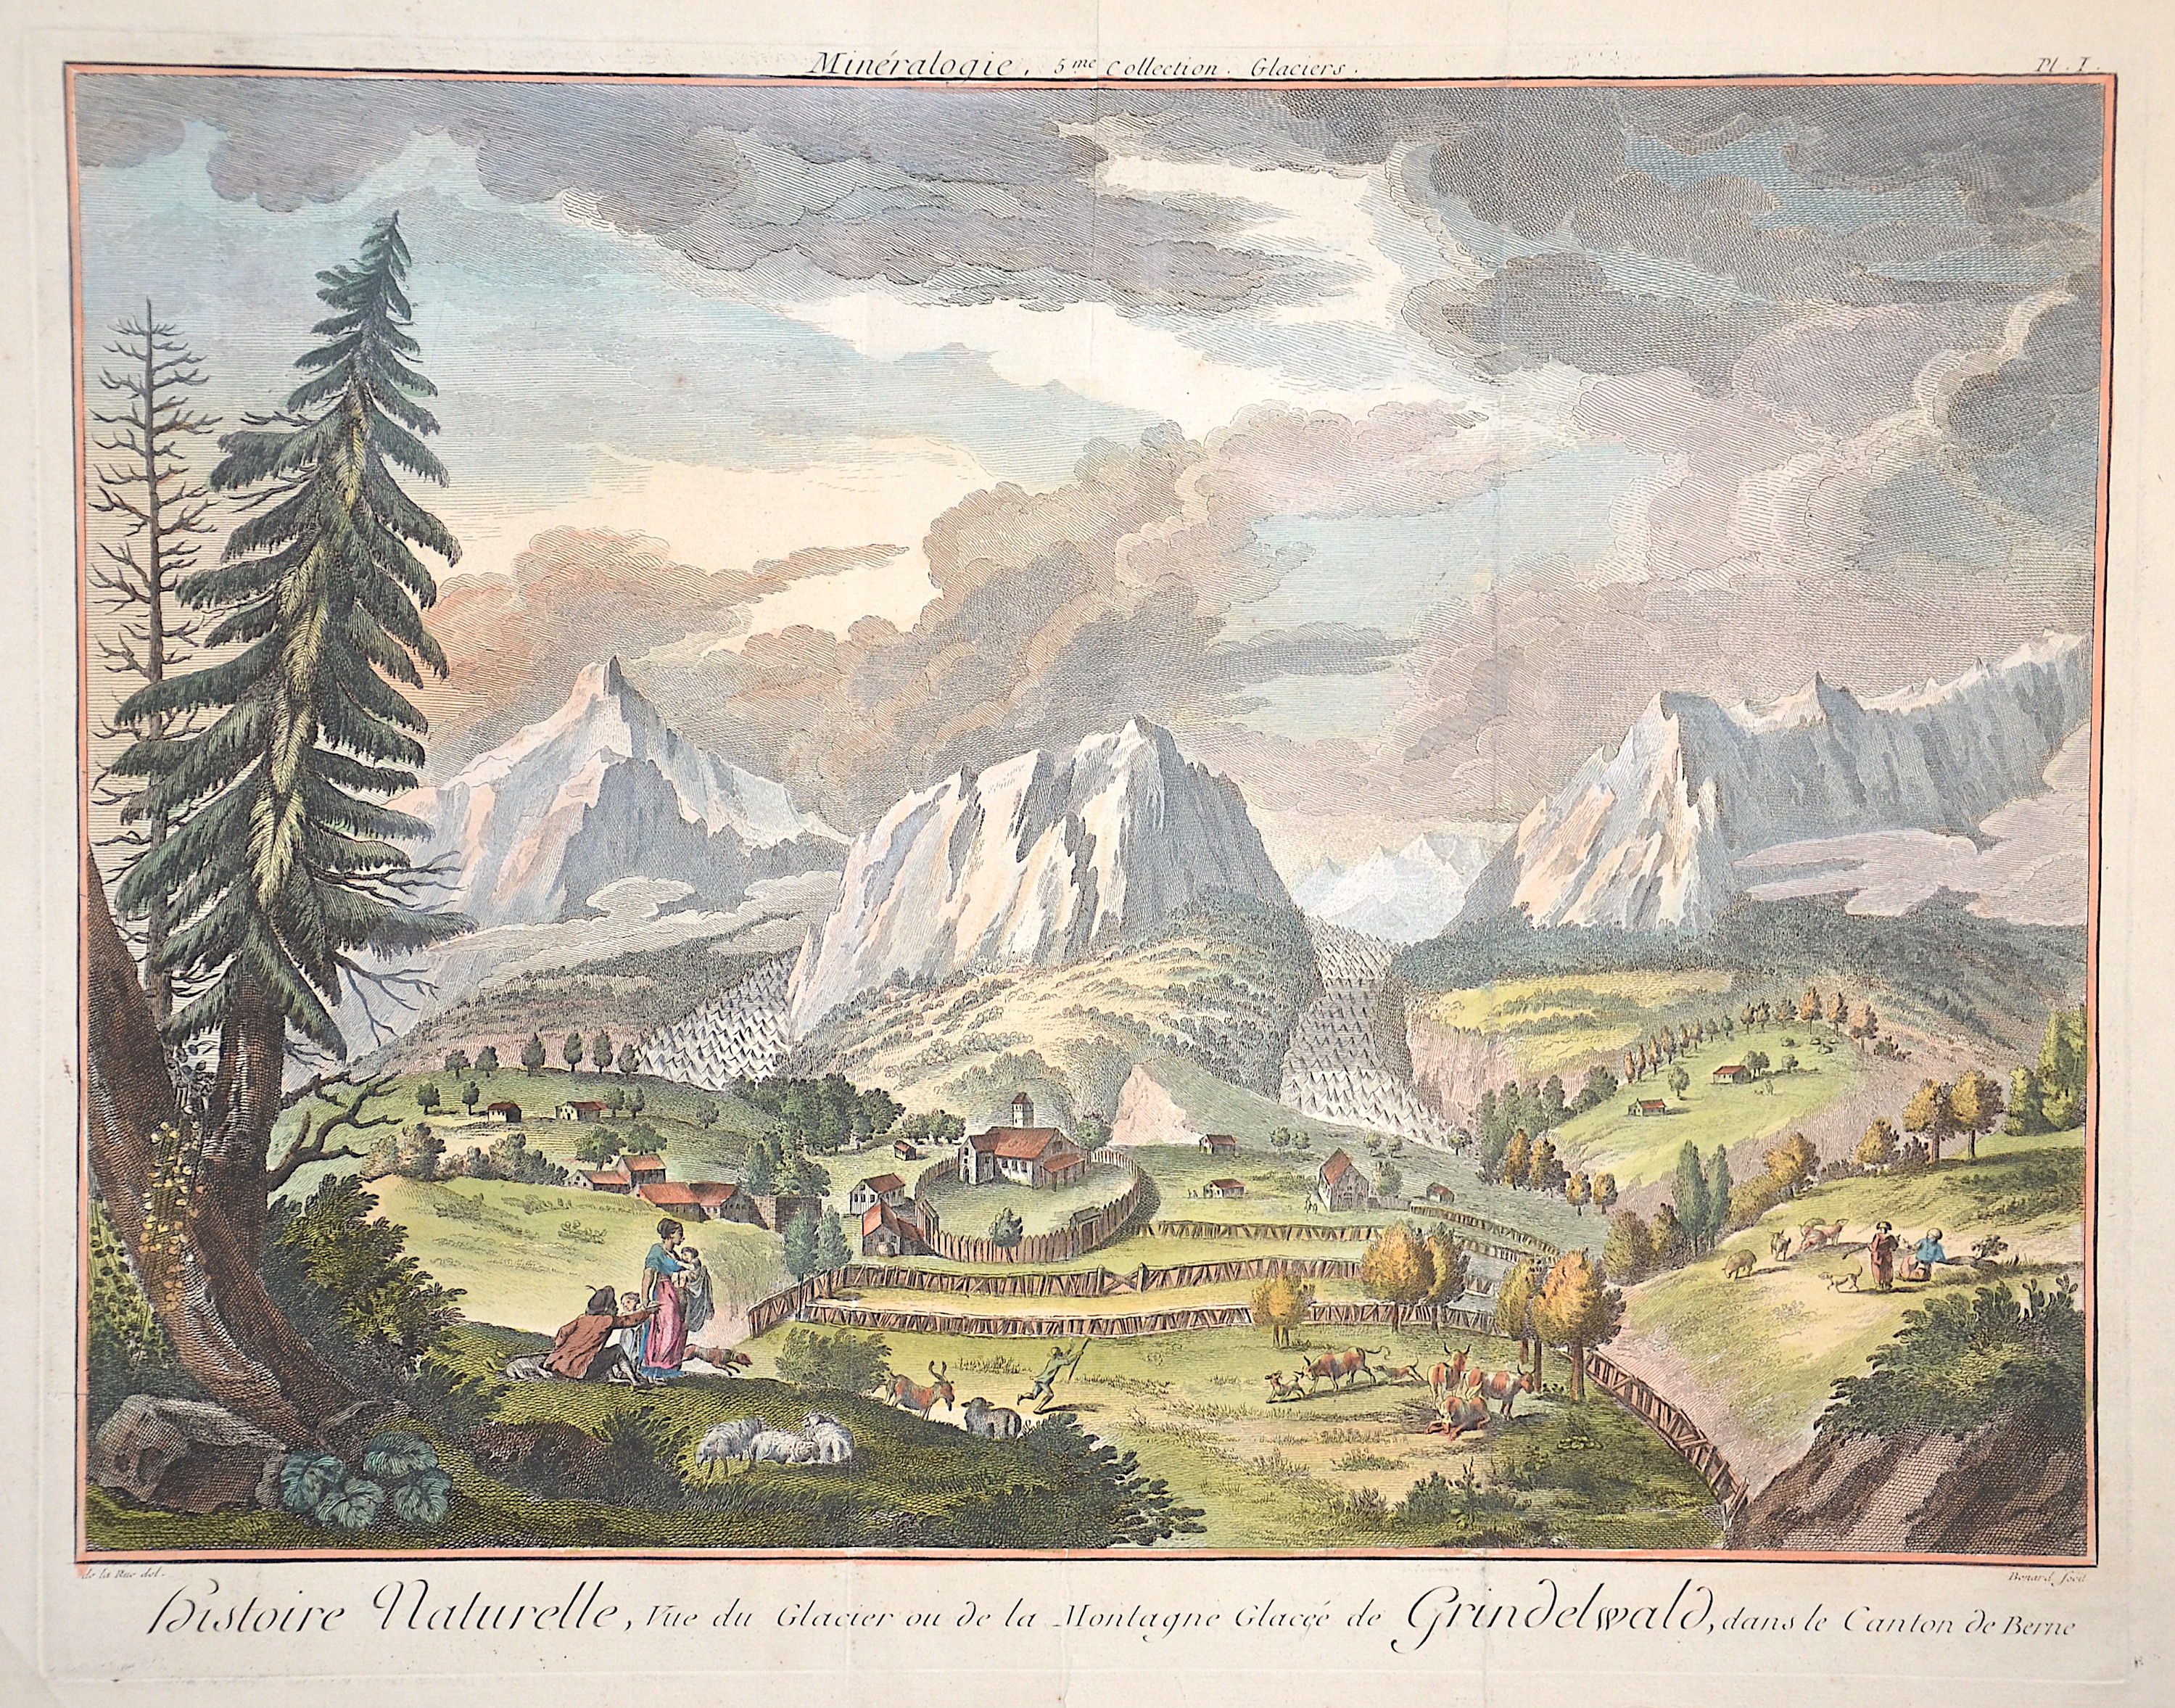 Benard  Histoire naturelle, vue du Glacier de la Montagne Glacée de Grindelwald, dans le Canton de Bern